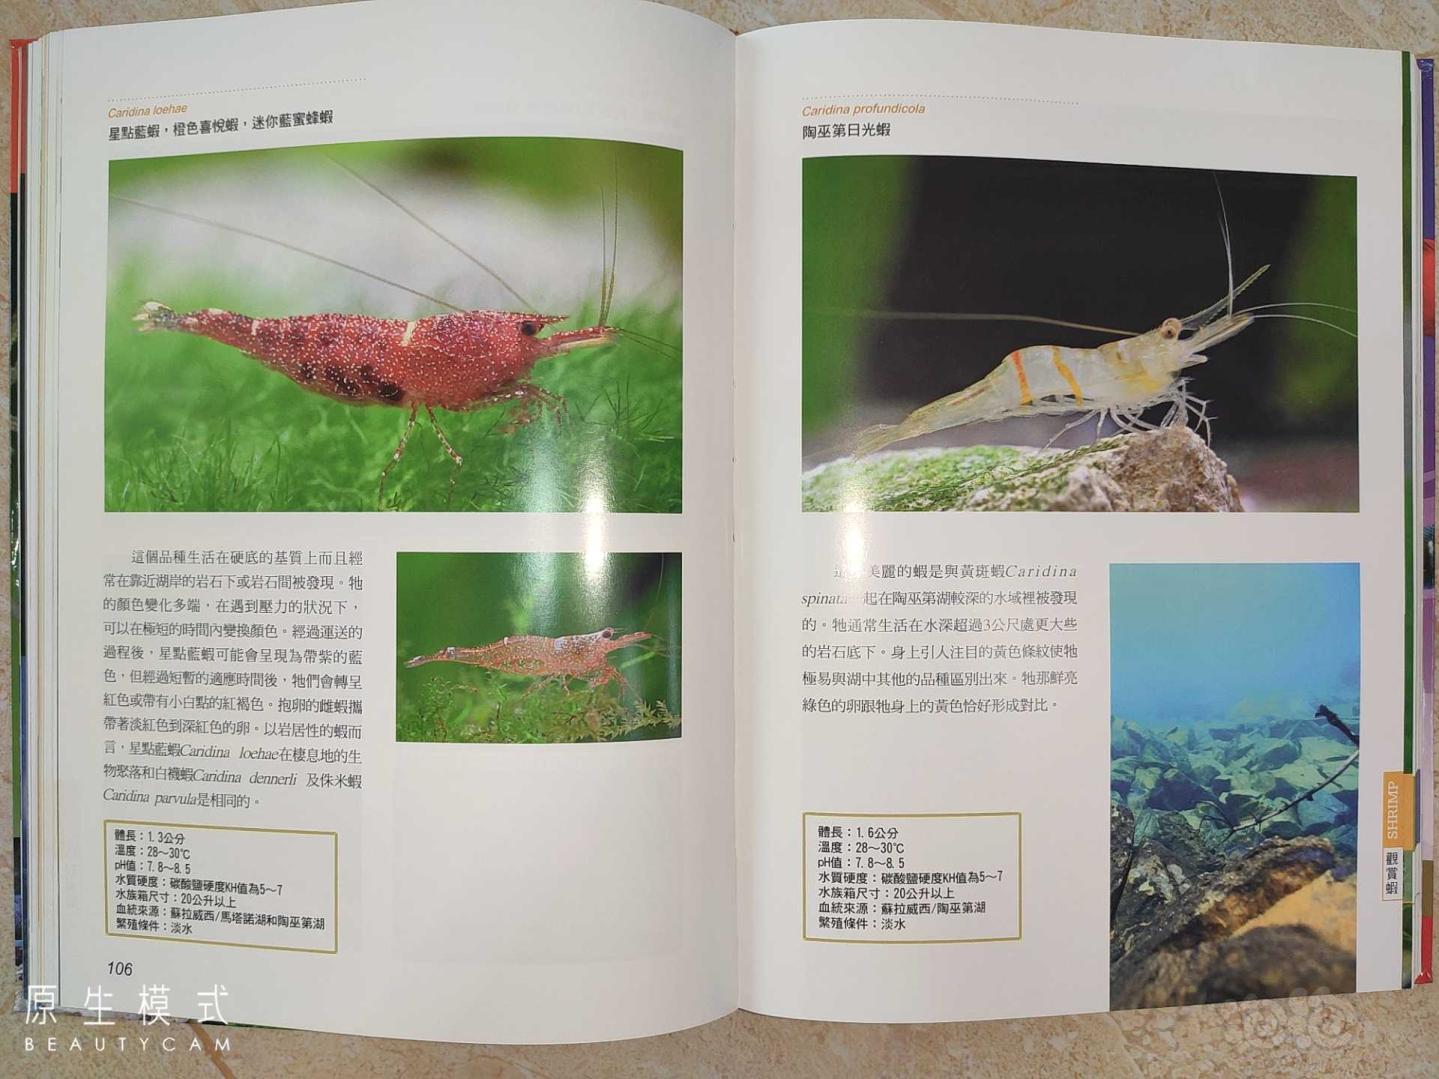 涵盖各种观赏虾、螯虾、观赏蟹、螺贝的《观赏无脊椎动物》-图7